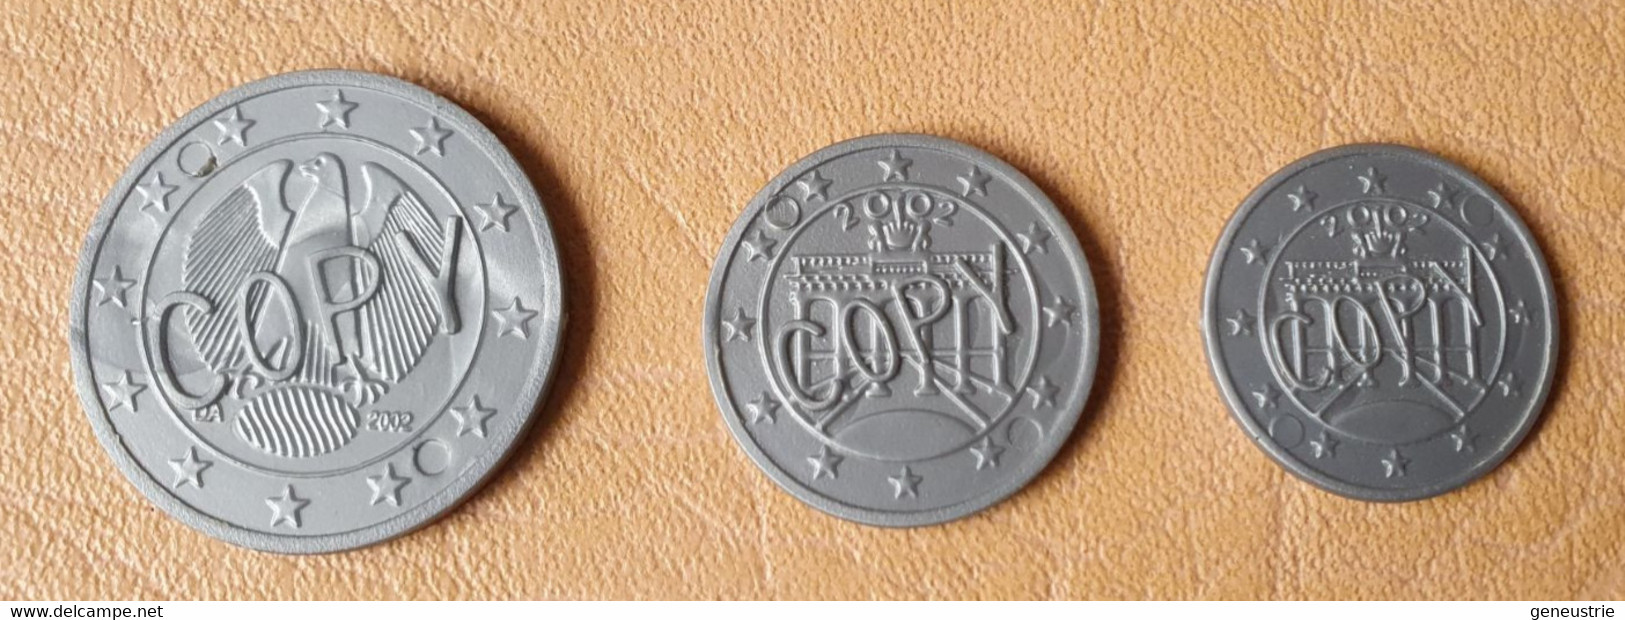 Lot De 3 Monnaies Plastique D'école En Euro "Copy" Allemagne - School Coins - Professionals/Firms